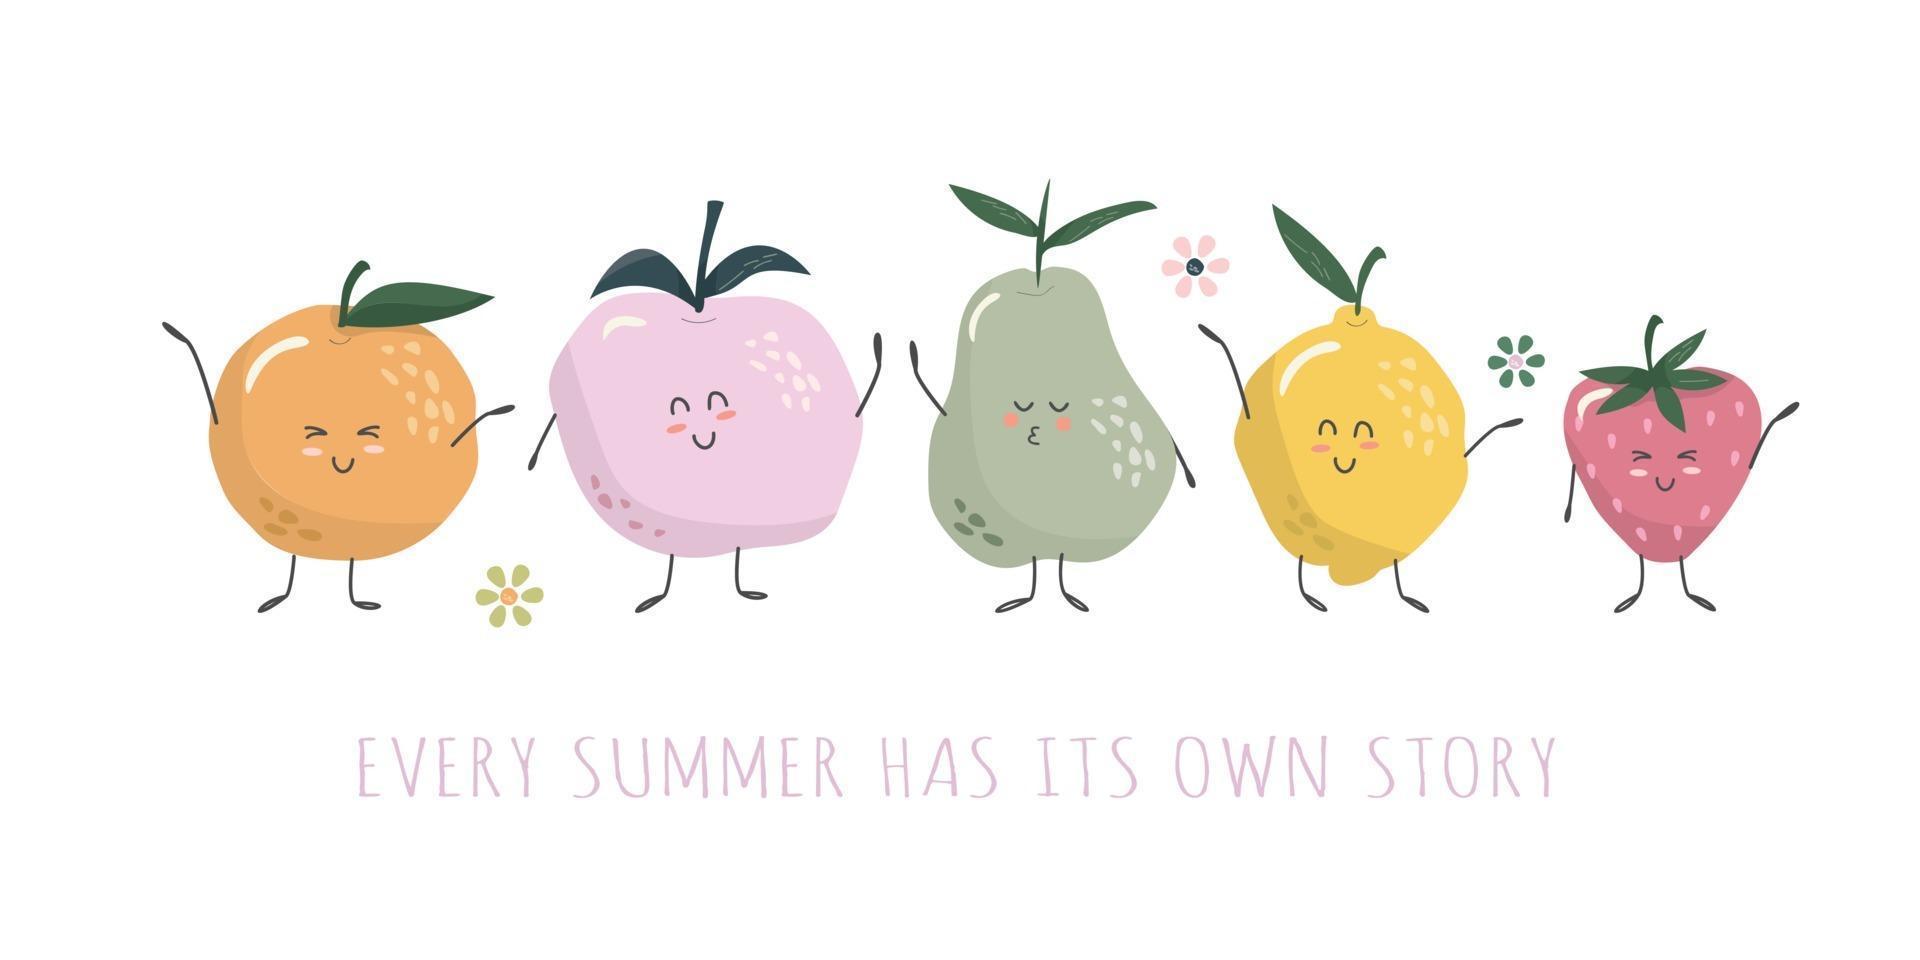 kawaii Fruchtcharaktere. niedliche Cartoons lokalisiert auf Weiß. Sommersüßigkeiten für Kinder. Vektor